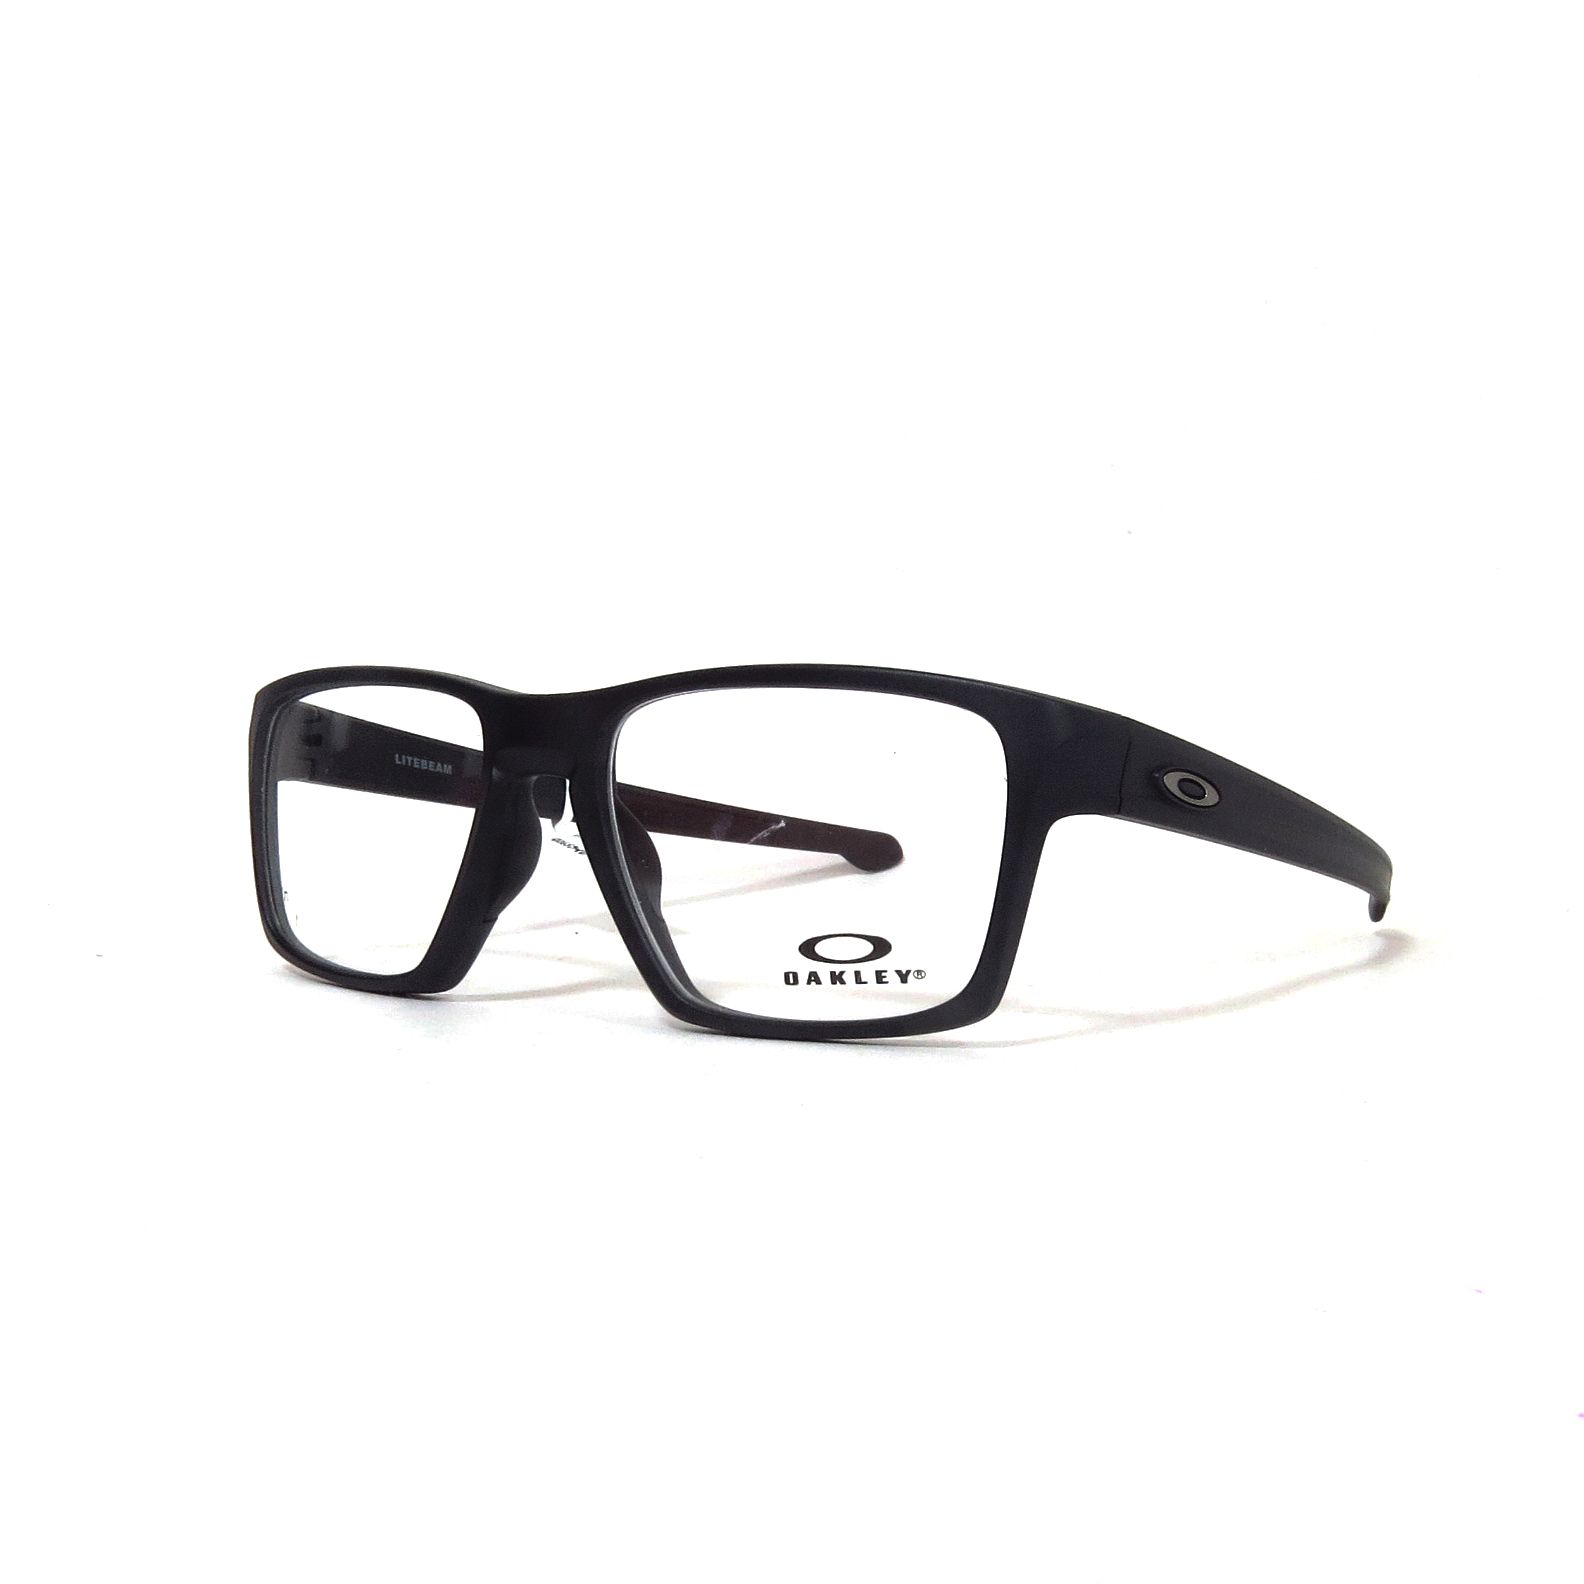 gas influenza pasta Óptica las gafas | OAKLEY - 8140 - Óptica las gafas